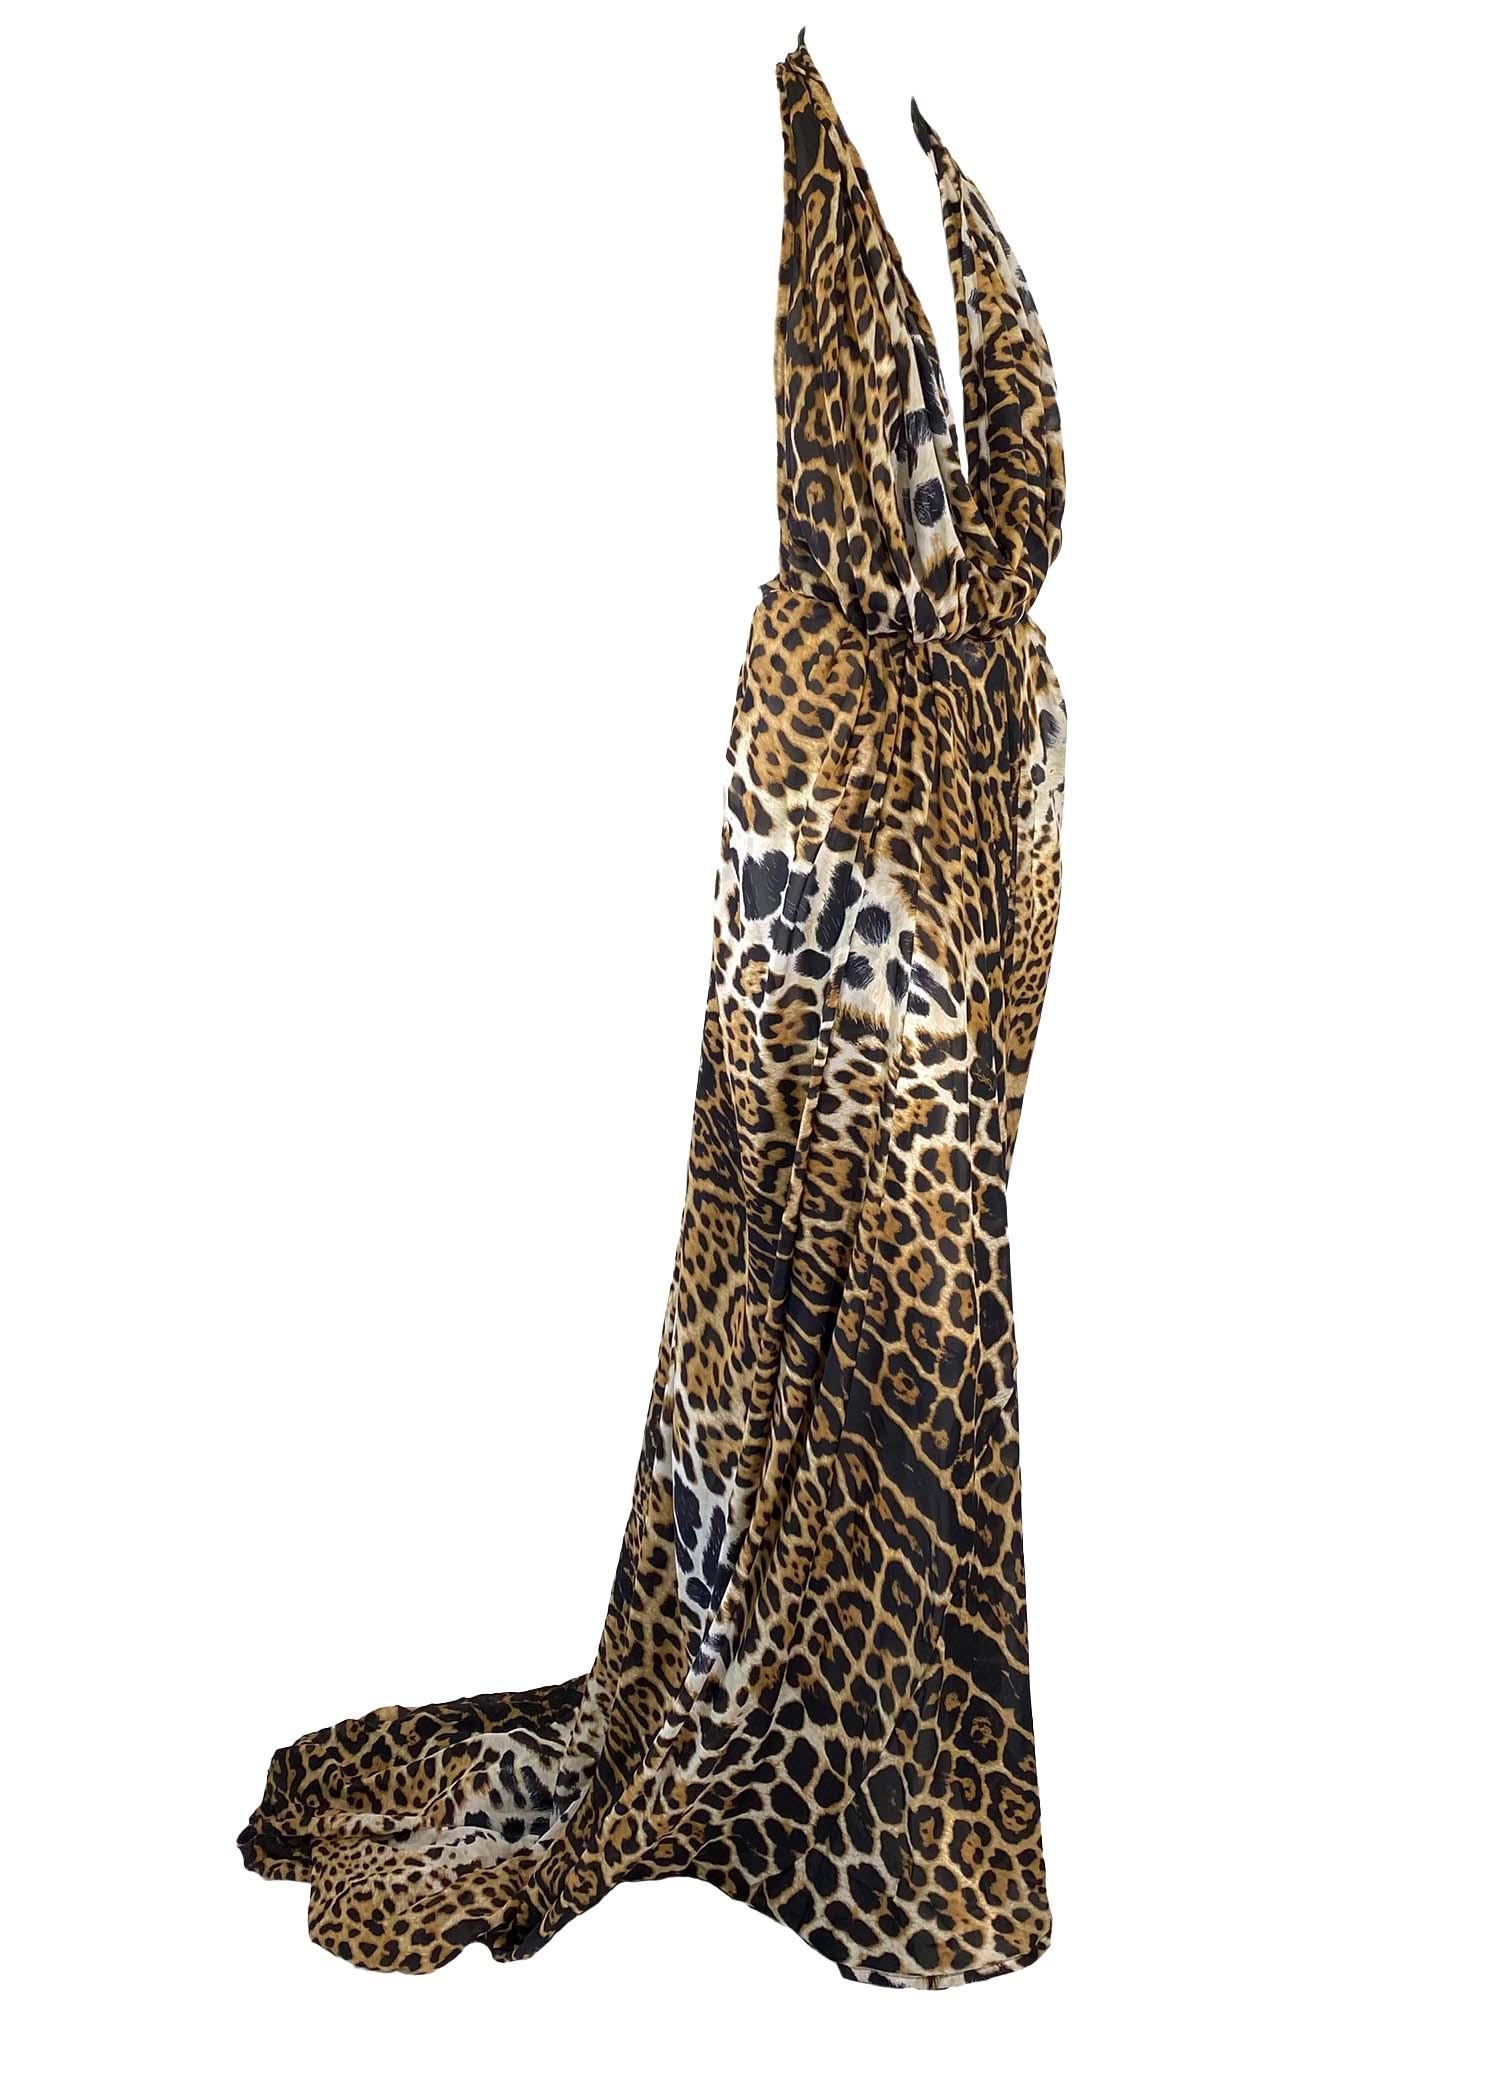 S/S 2002 Yves Saint Laurent by Tom Ford Silk Cheetah Print Gown Safari ...